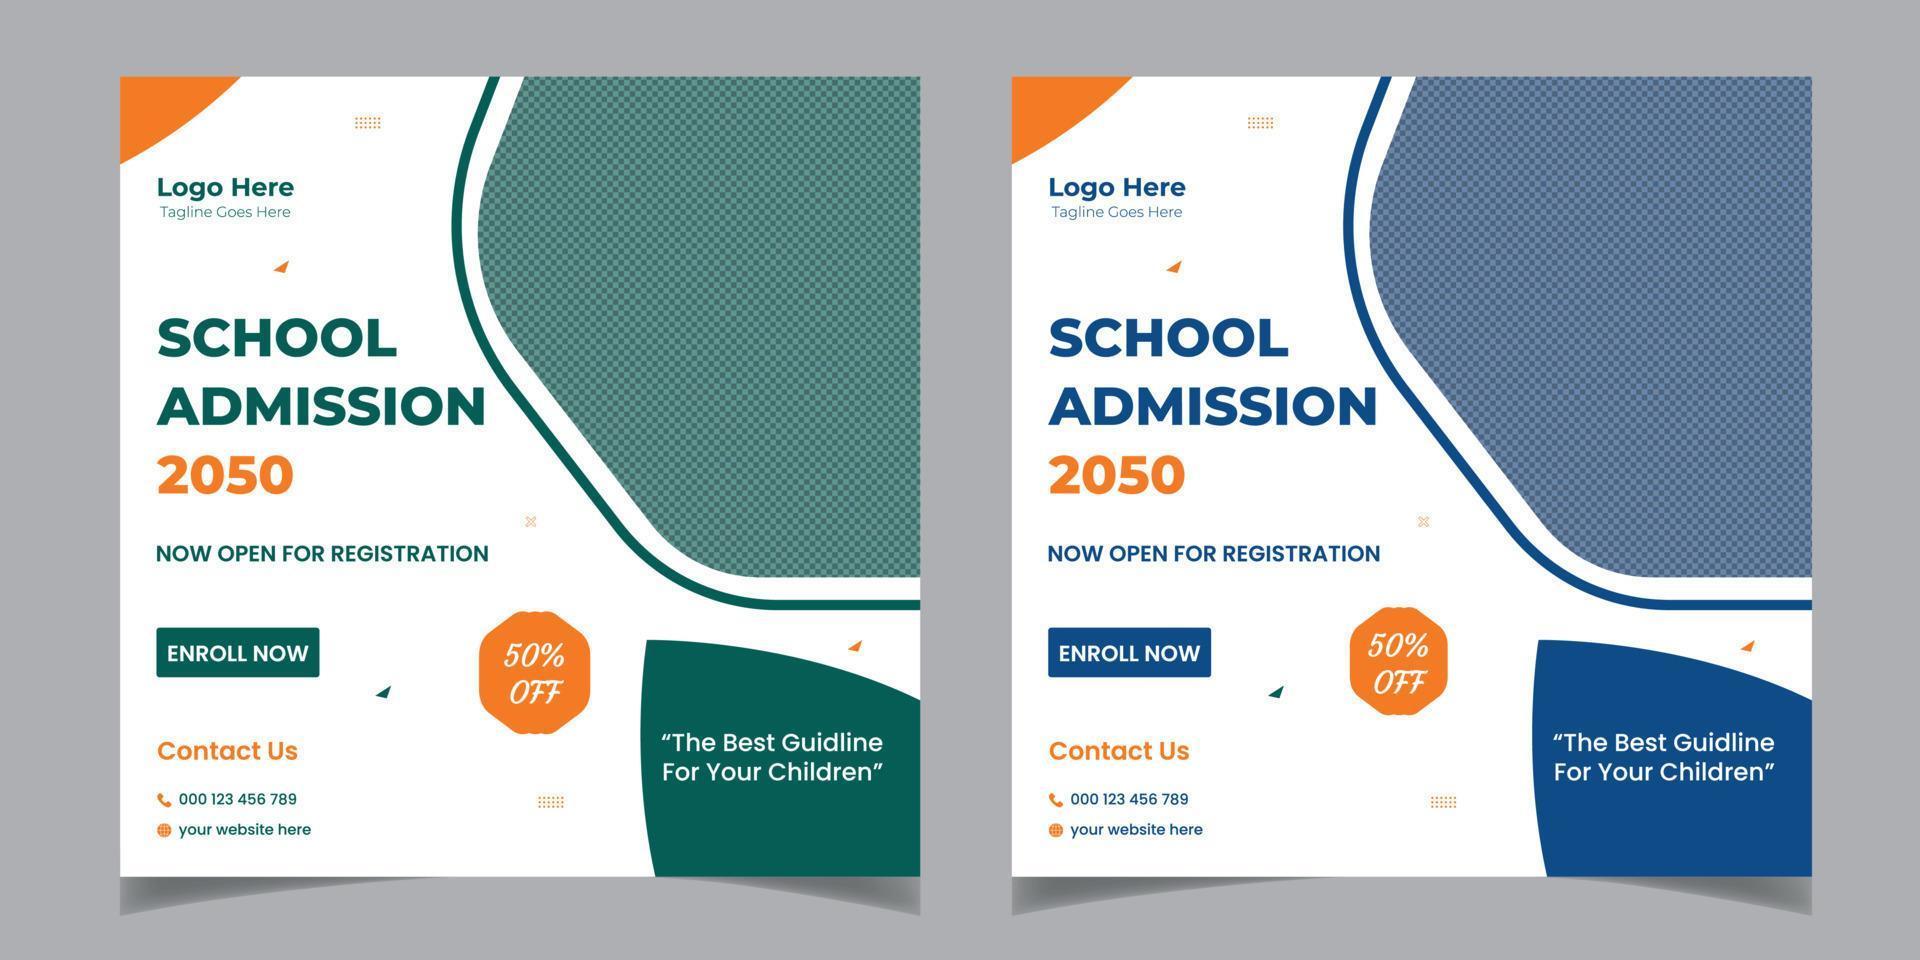 modello di progettazione di banner per post sui social media per volantini quadrati professionali per l'ammissione alla scuola per bambini vettore